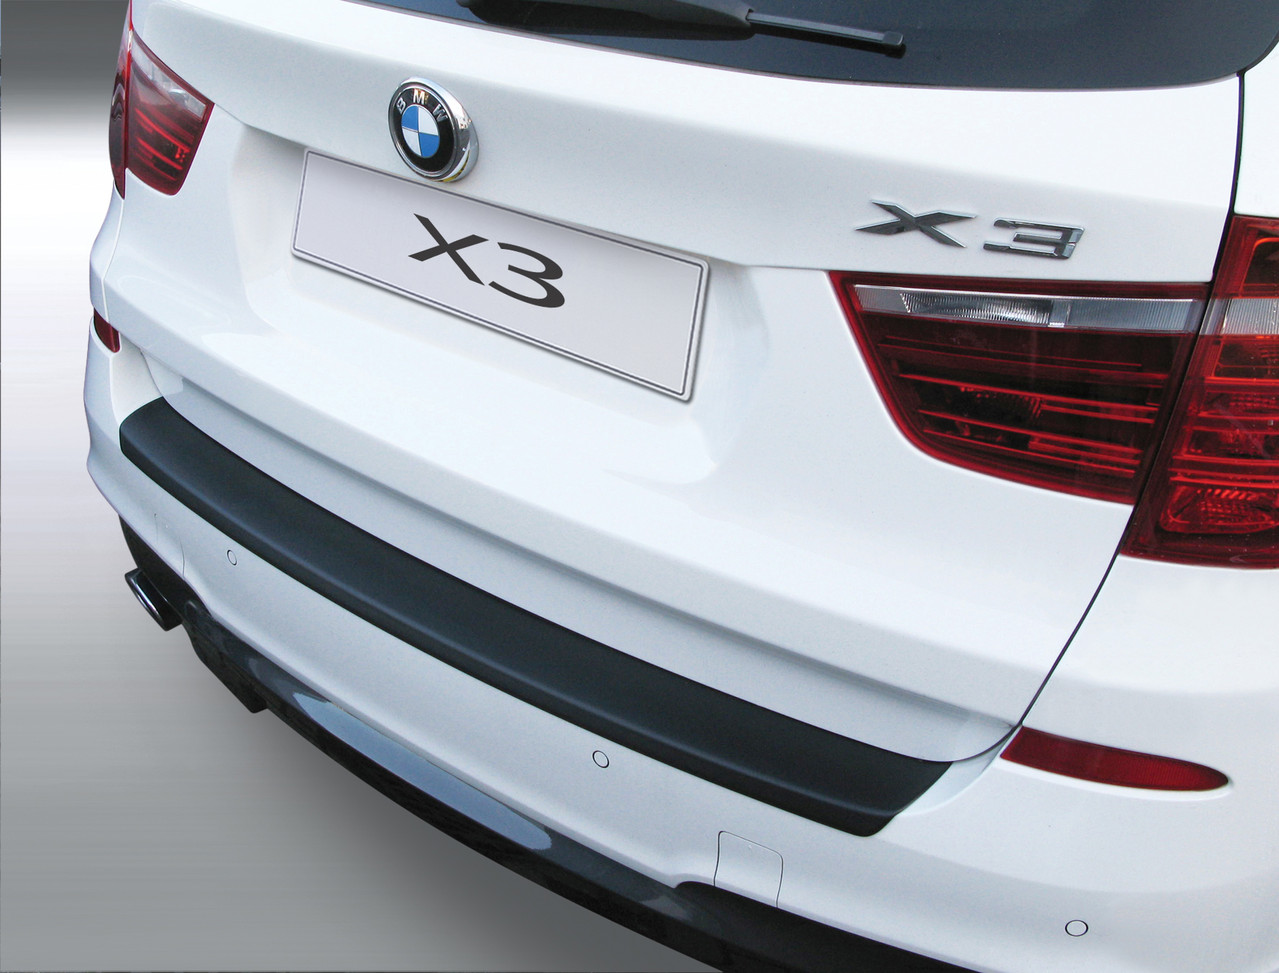 Ladekantenschutz für BMW X3 - Schutz für die Ladekante Ihres Fahrzeuges